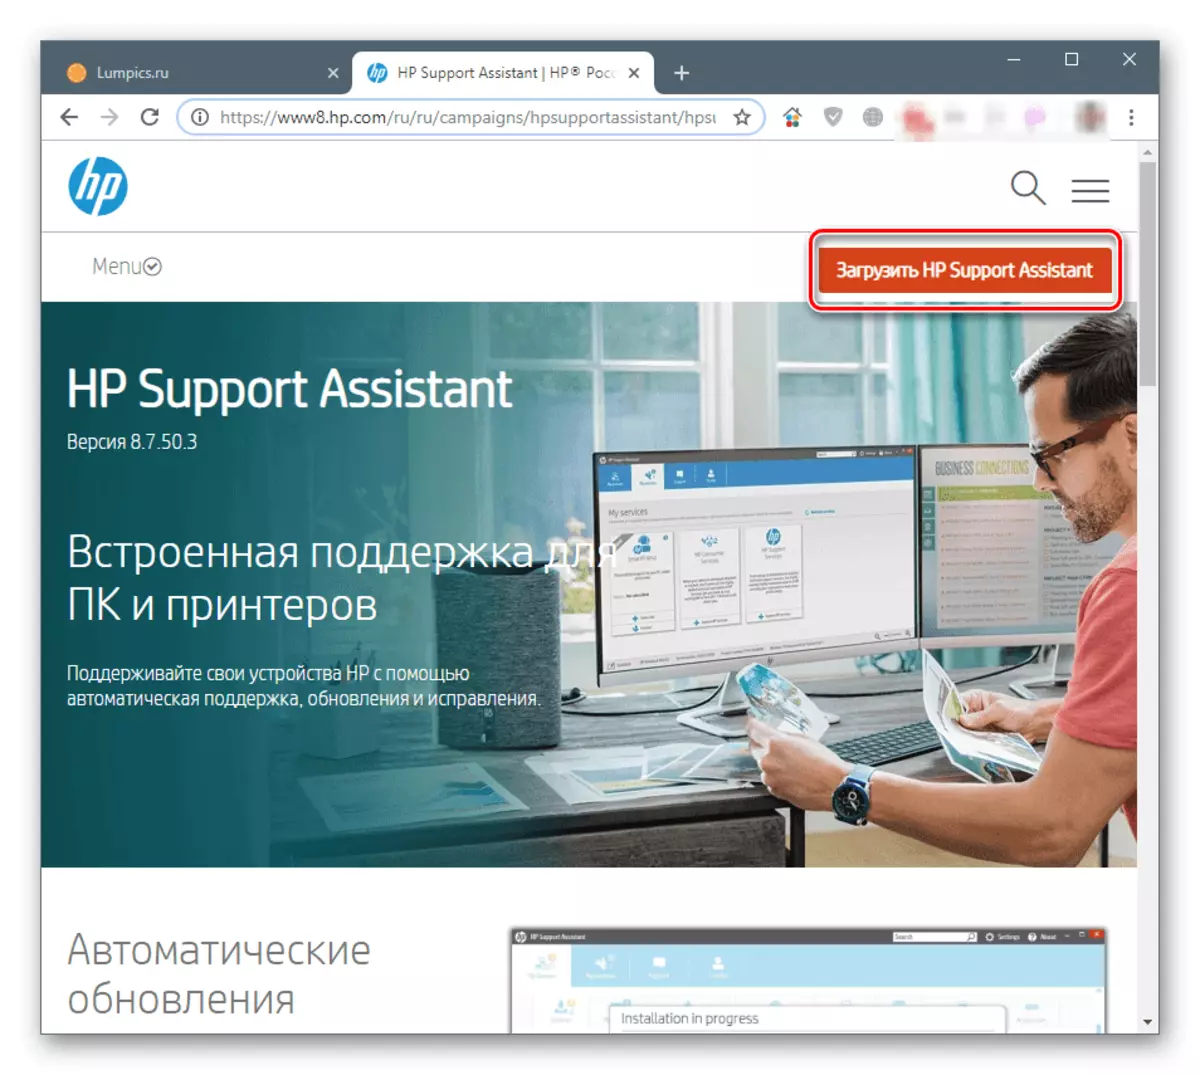 دانلود HP پشتیبانی دستیار از وب سایت رسمی